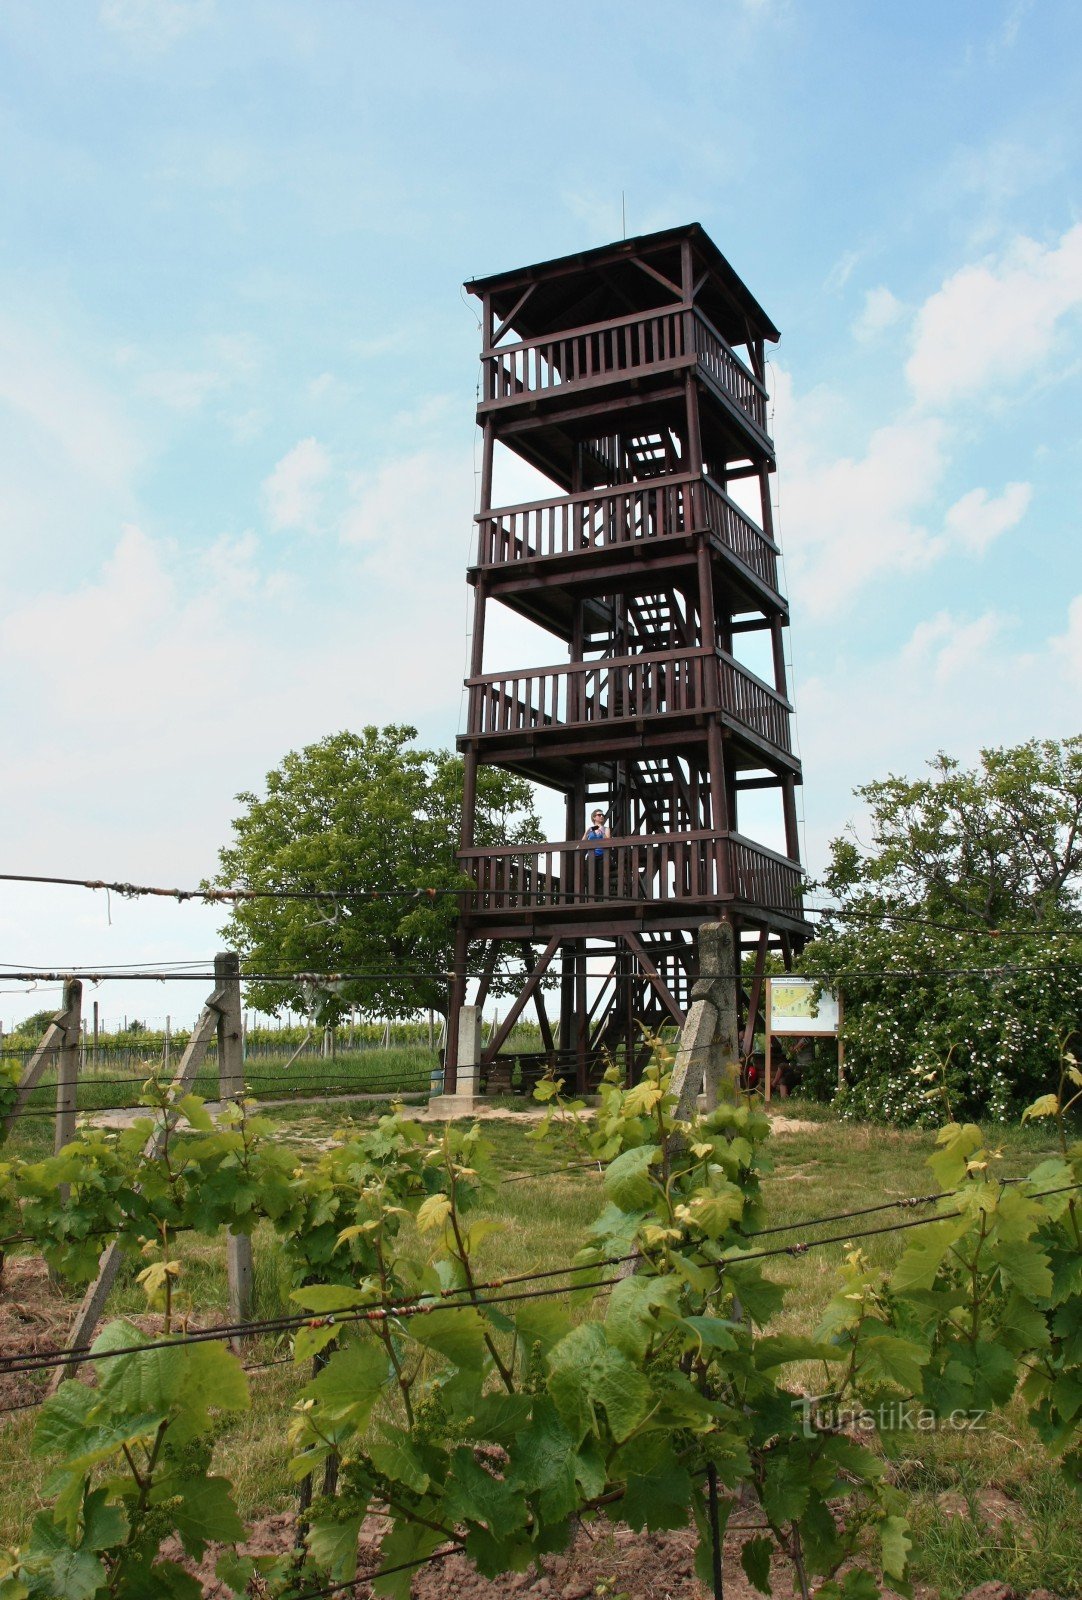 Torre de observação Kraví hora - 15 m, 57 degraus, 272 m acima do nível do mar